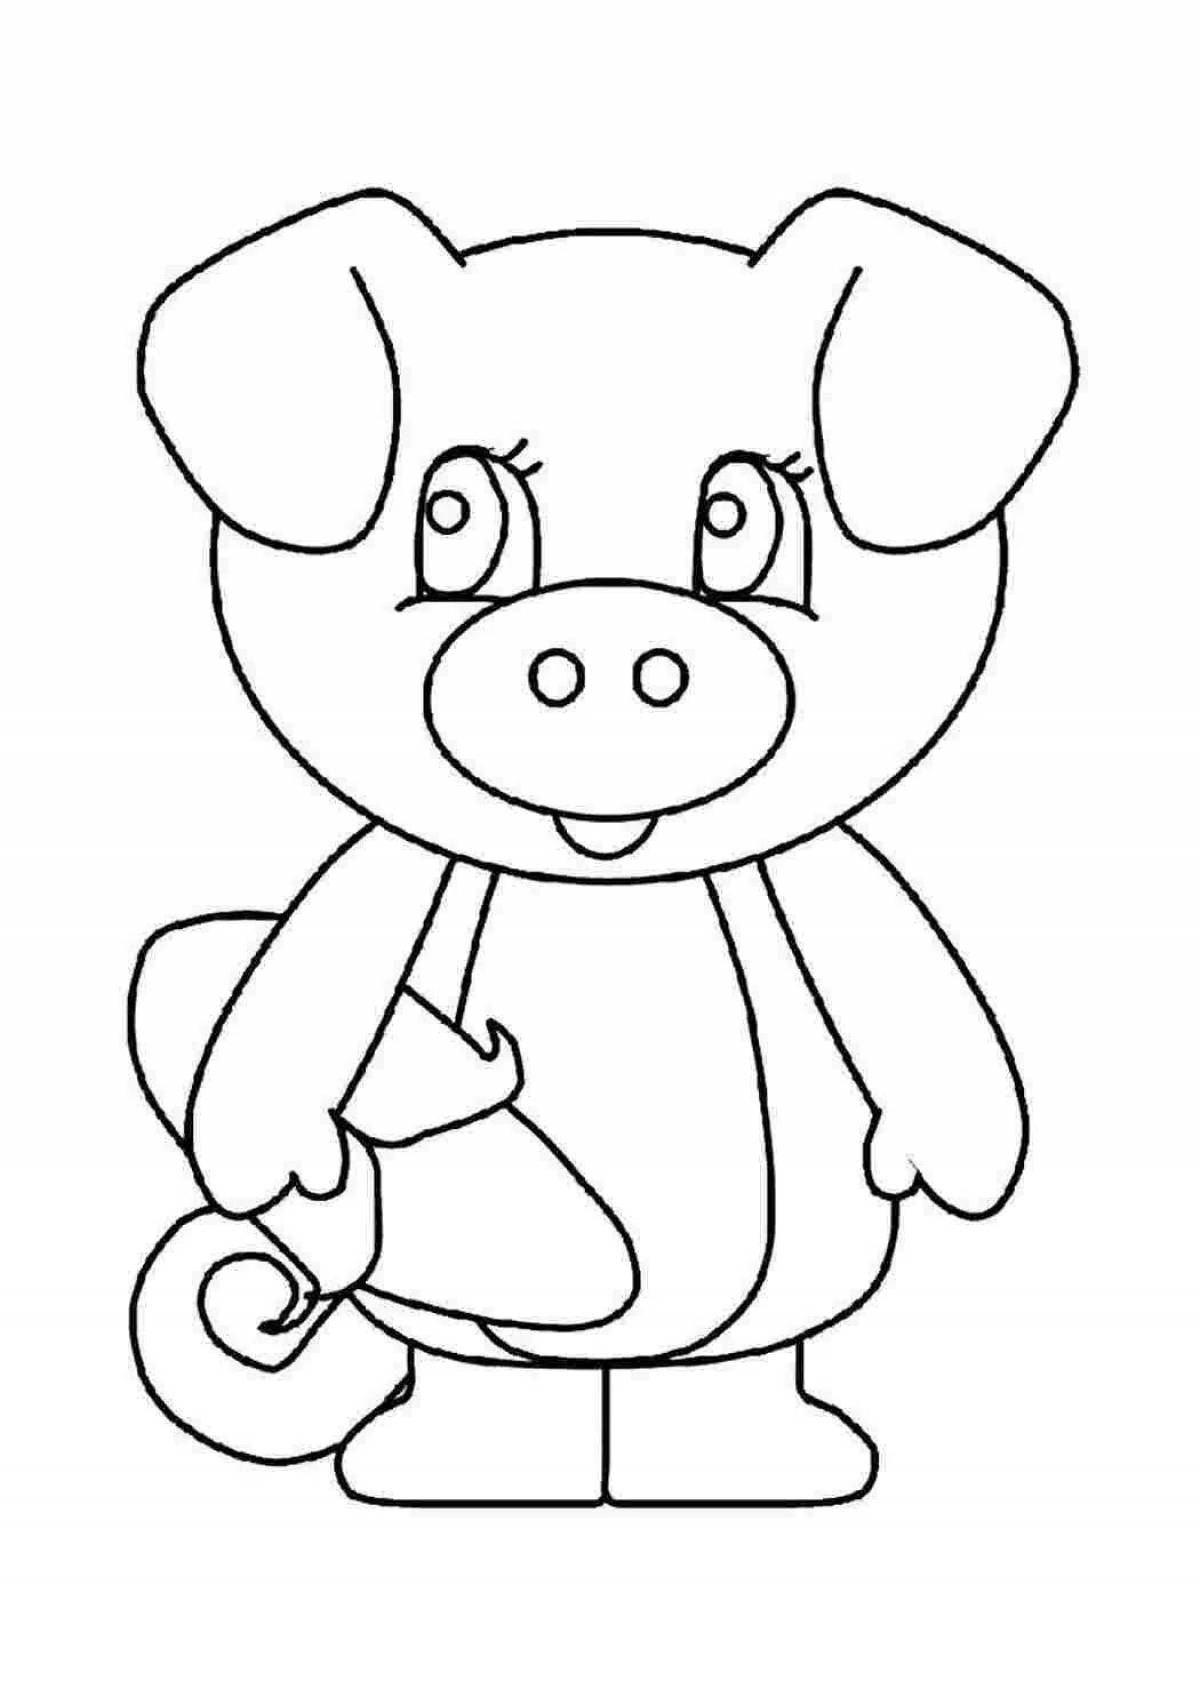 Cute pig coloring book